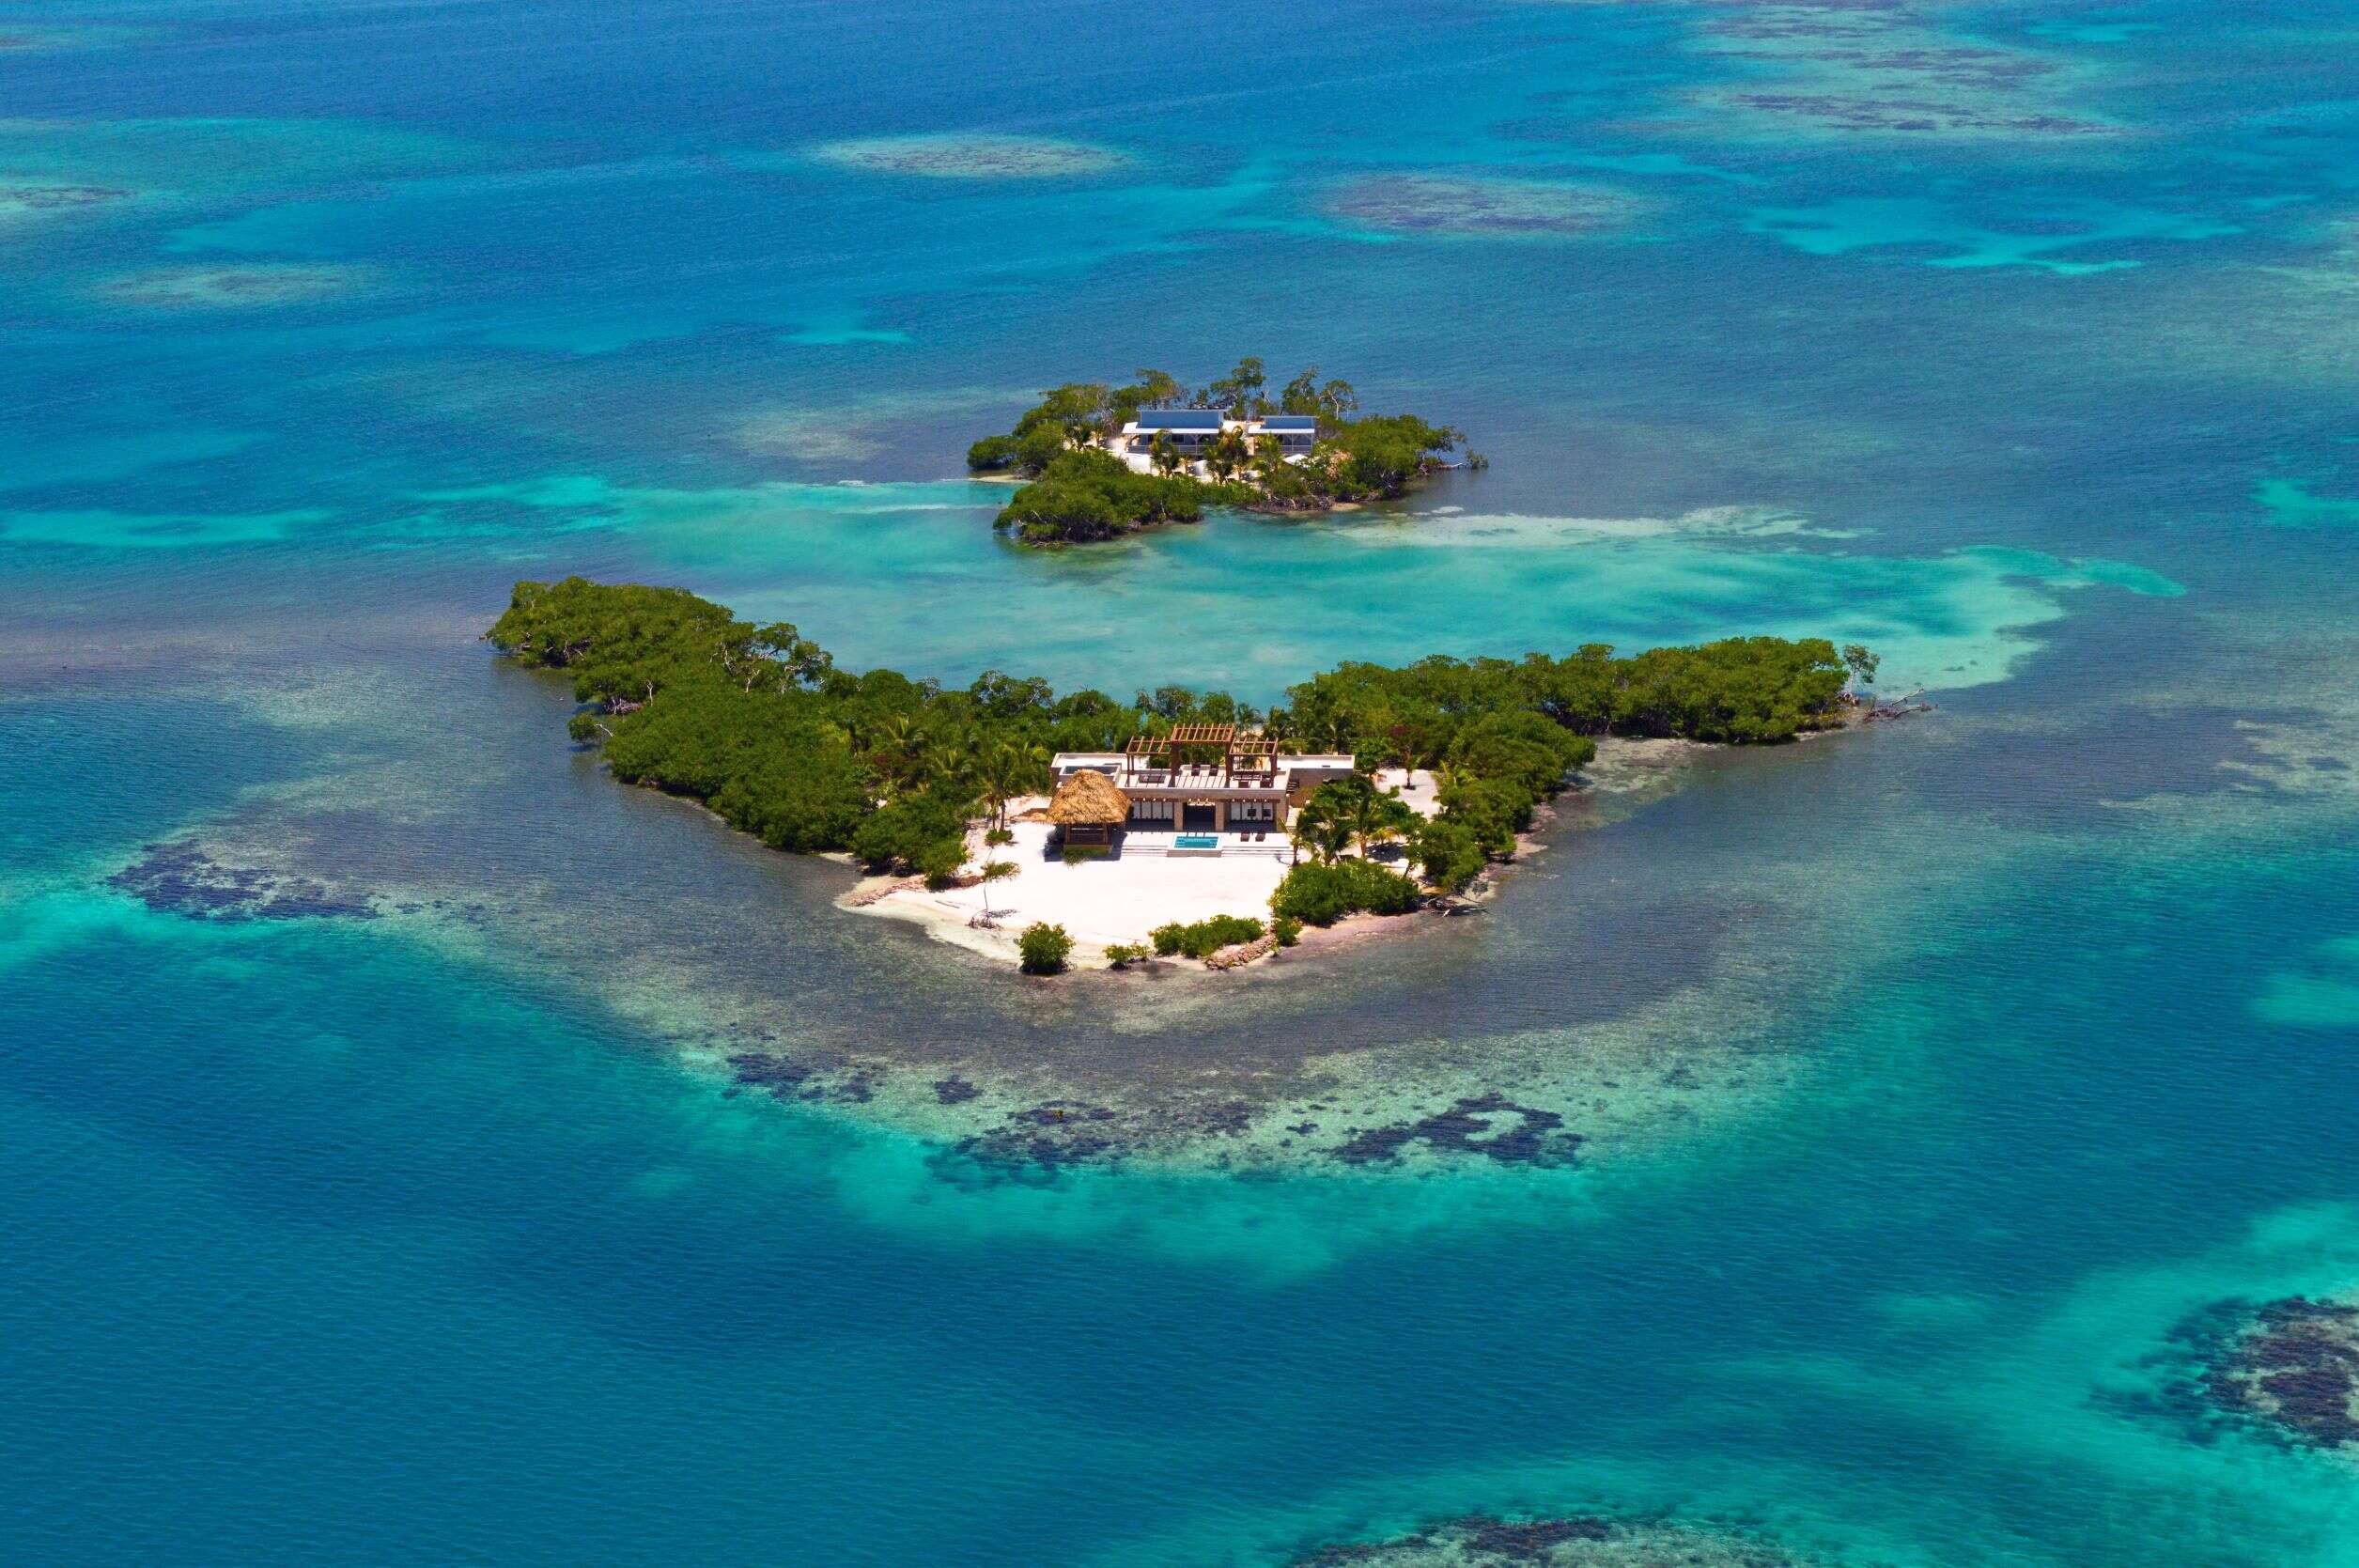 Gladden private island